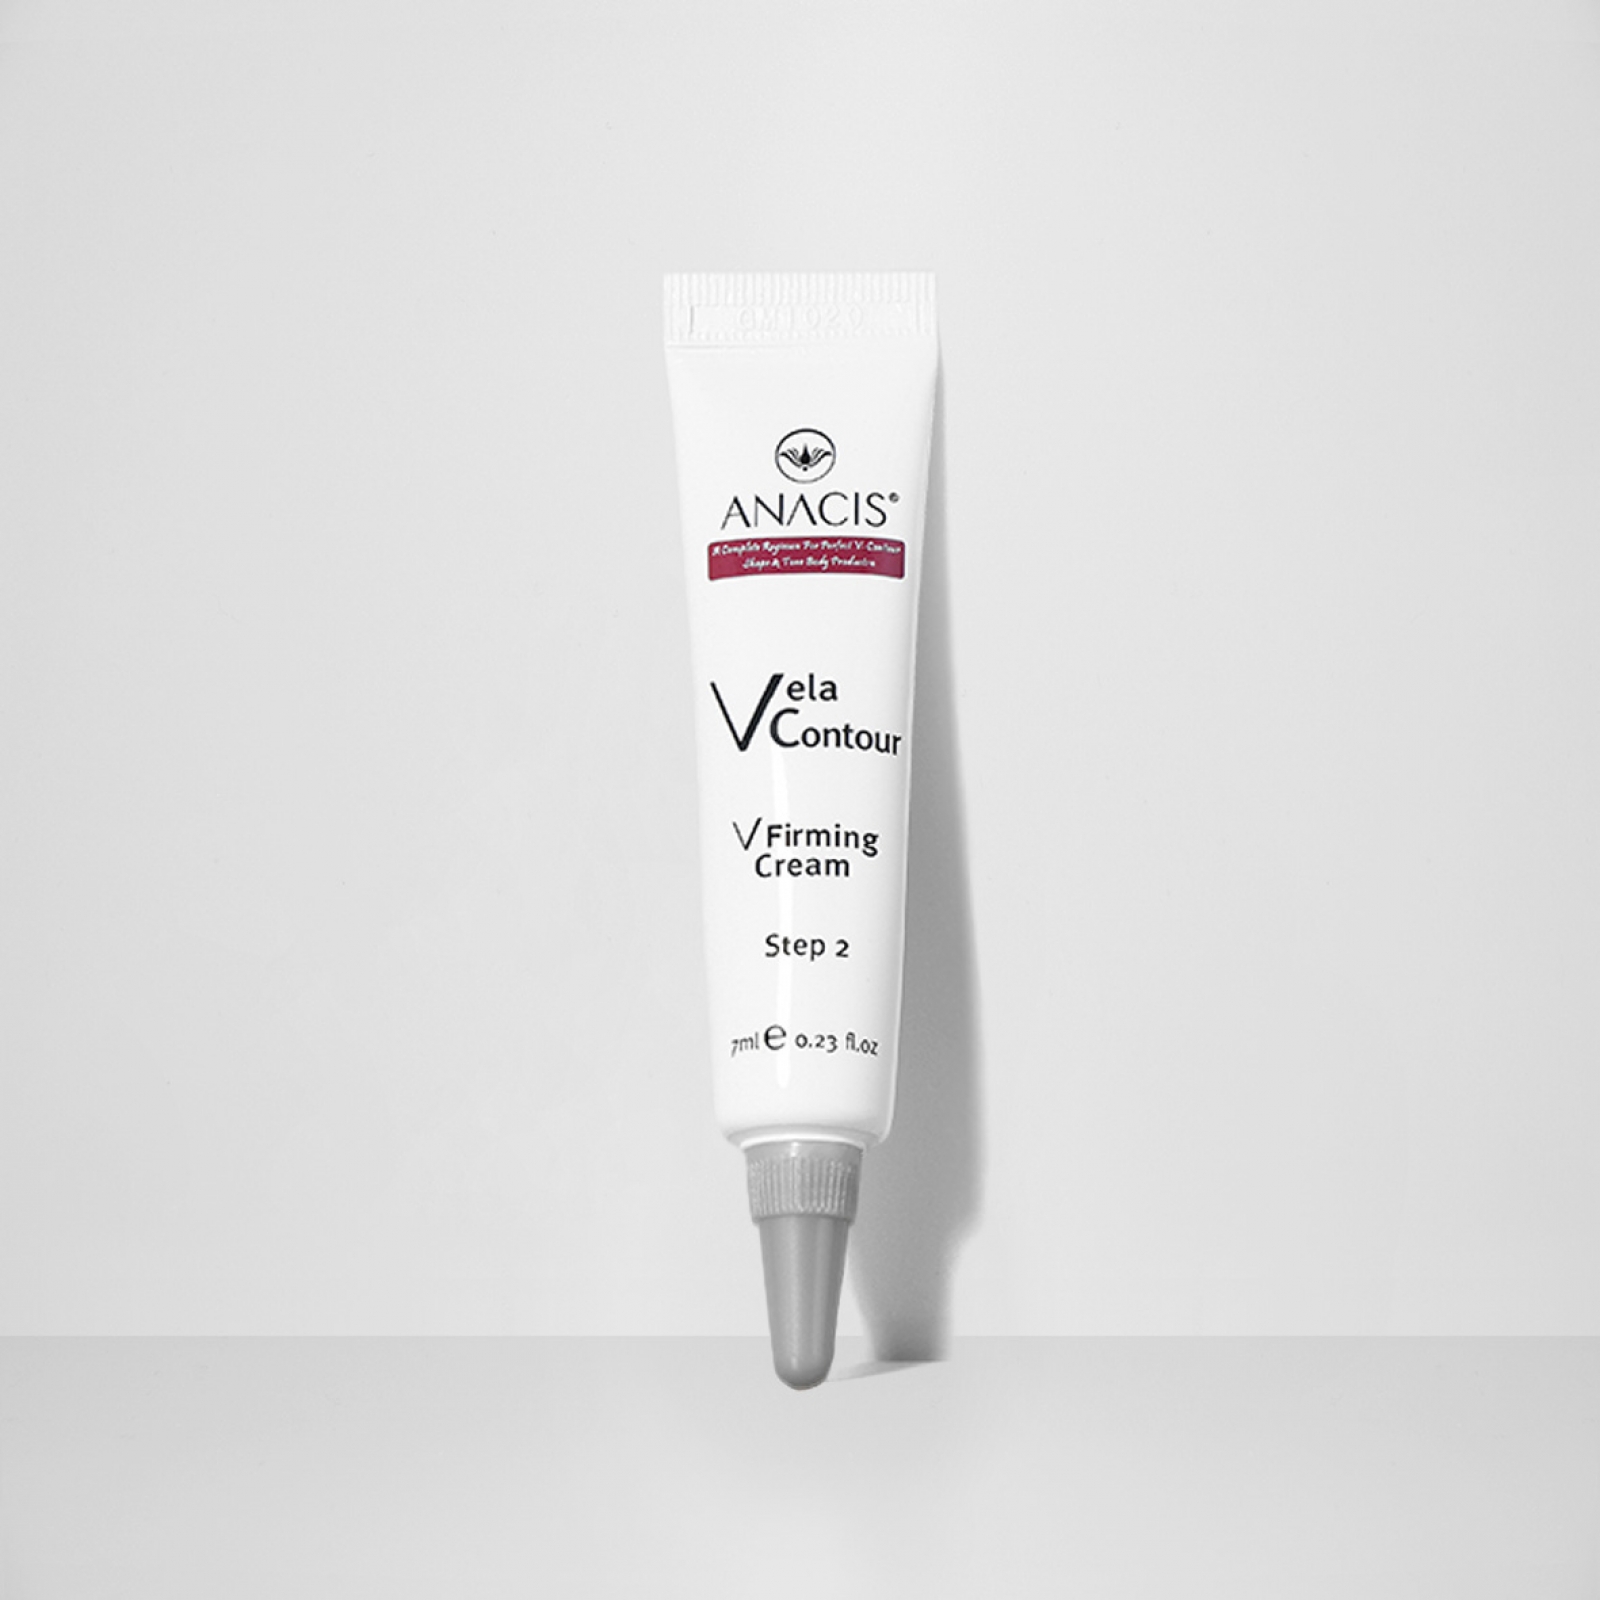 Мини-версия лифтинг-крема для коррекции овала лица Vela Contour V Firming Cream